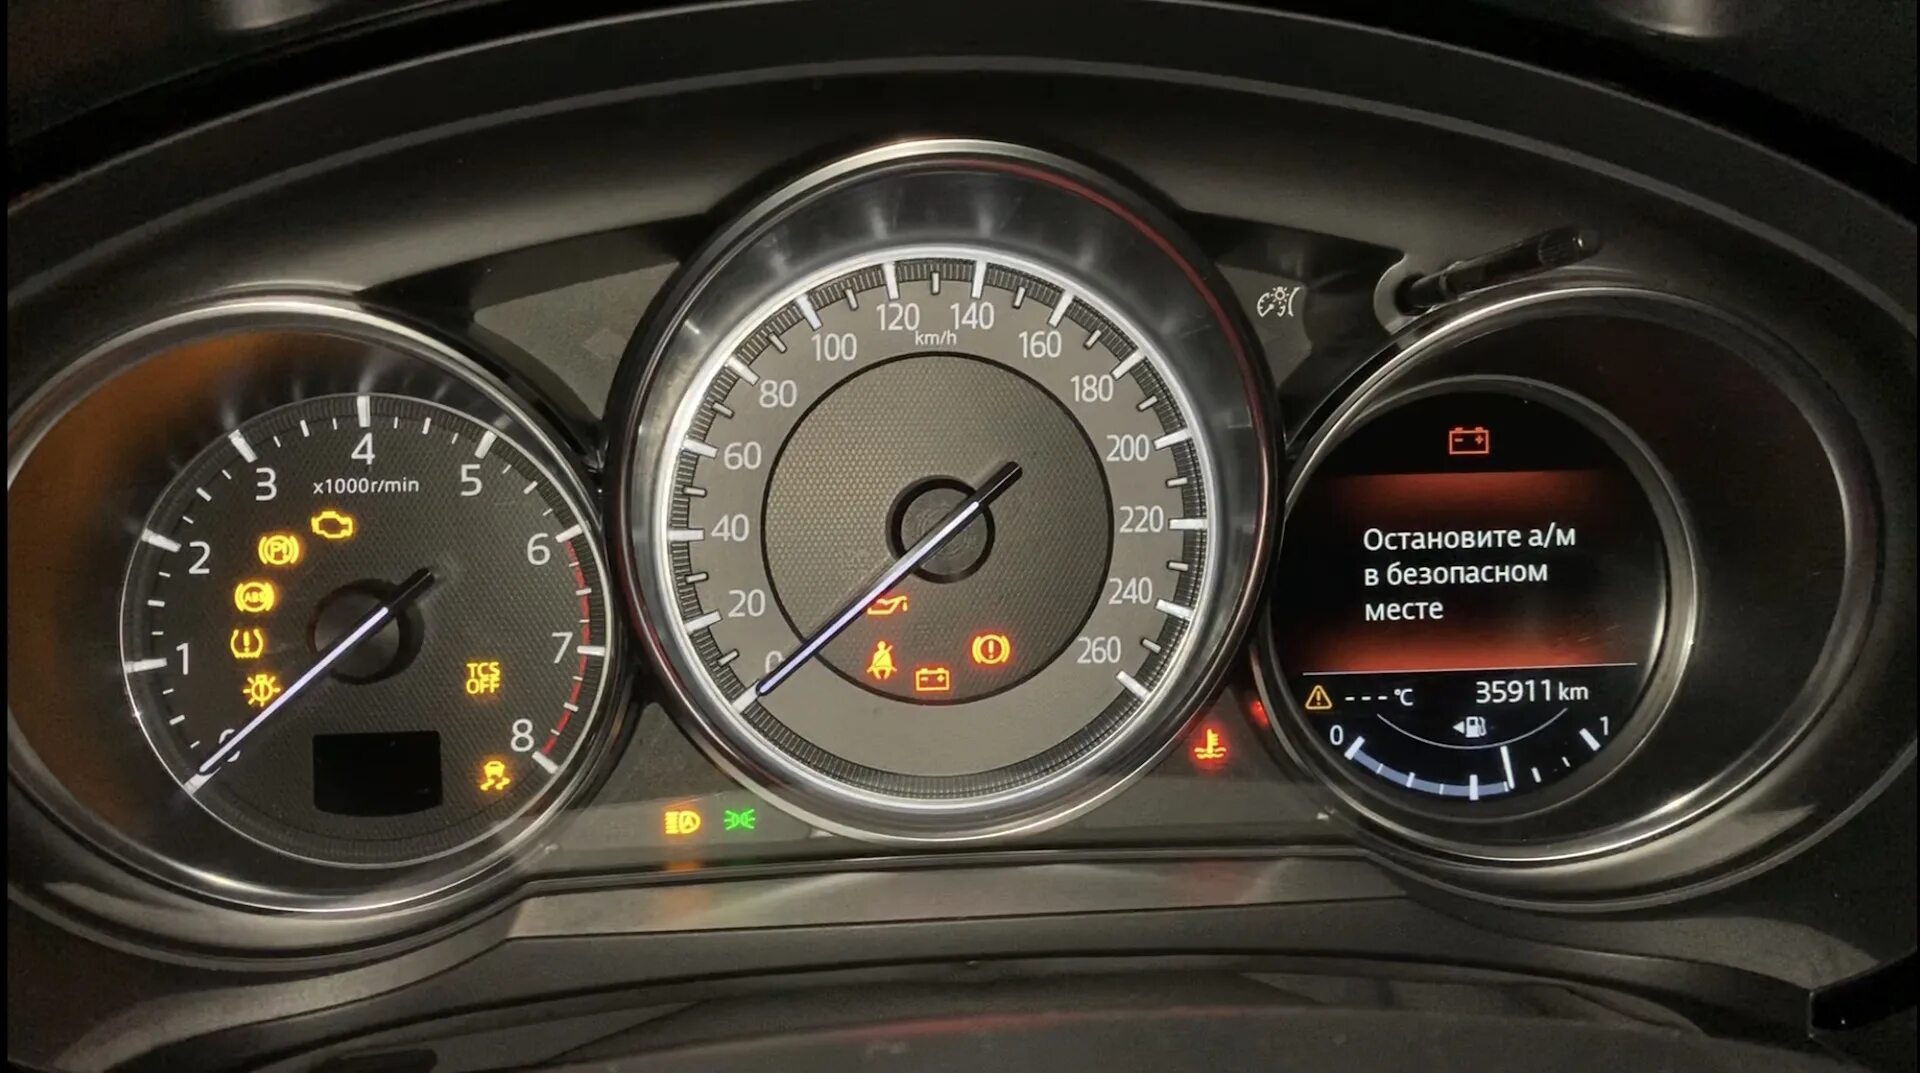 Прибор сх. Mazda CX 5 приборная панель индикаторы. Мазда СХ 9 спидометр. Мазда сх70 панель приборов. Американская приборка cx9.